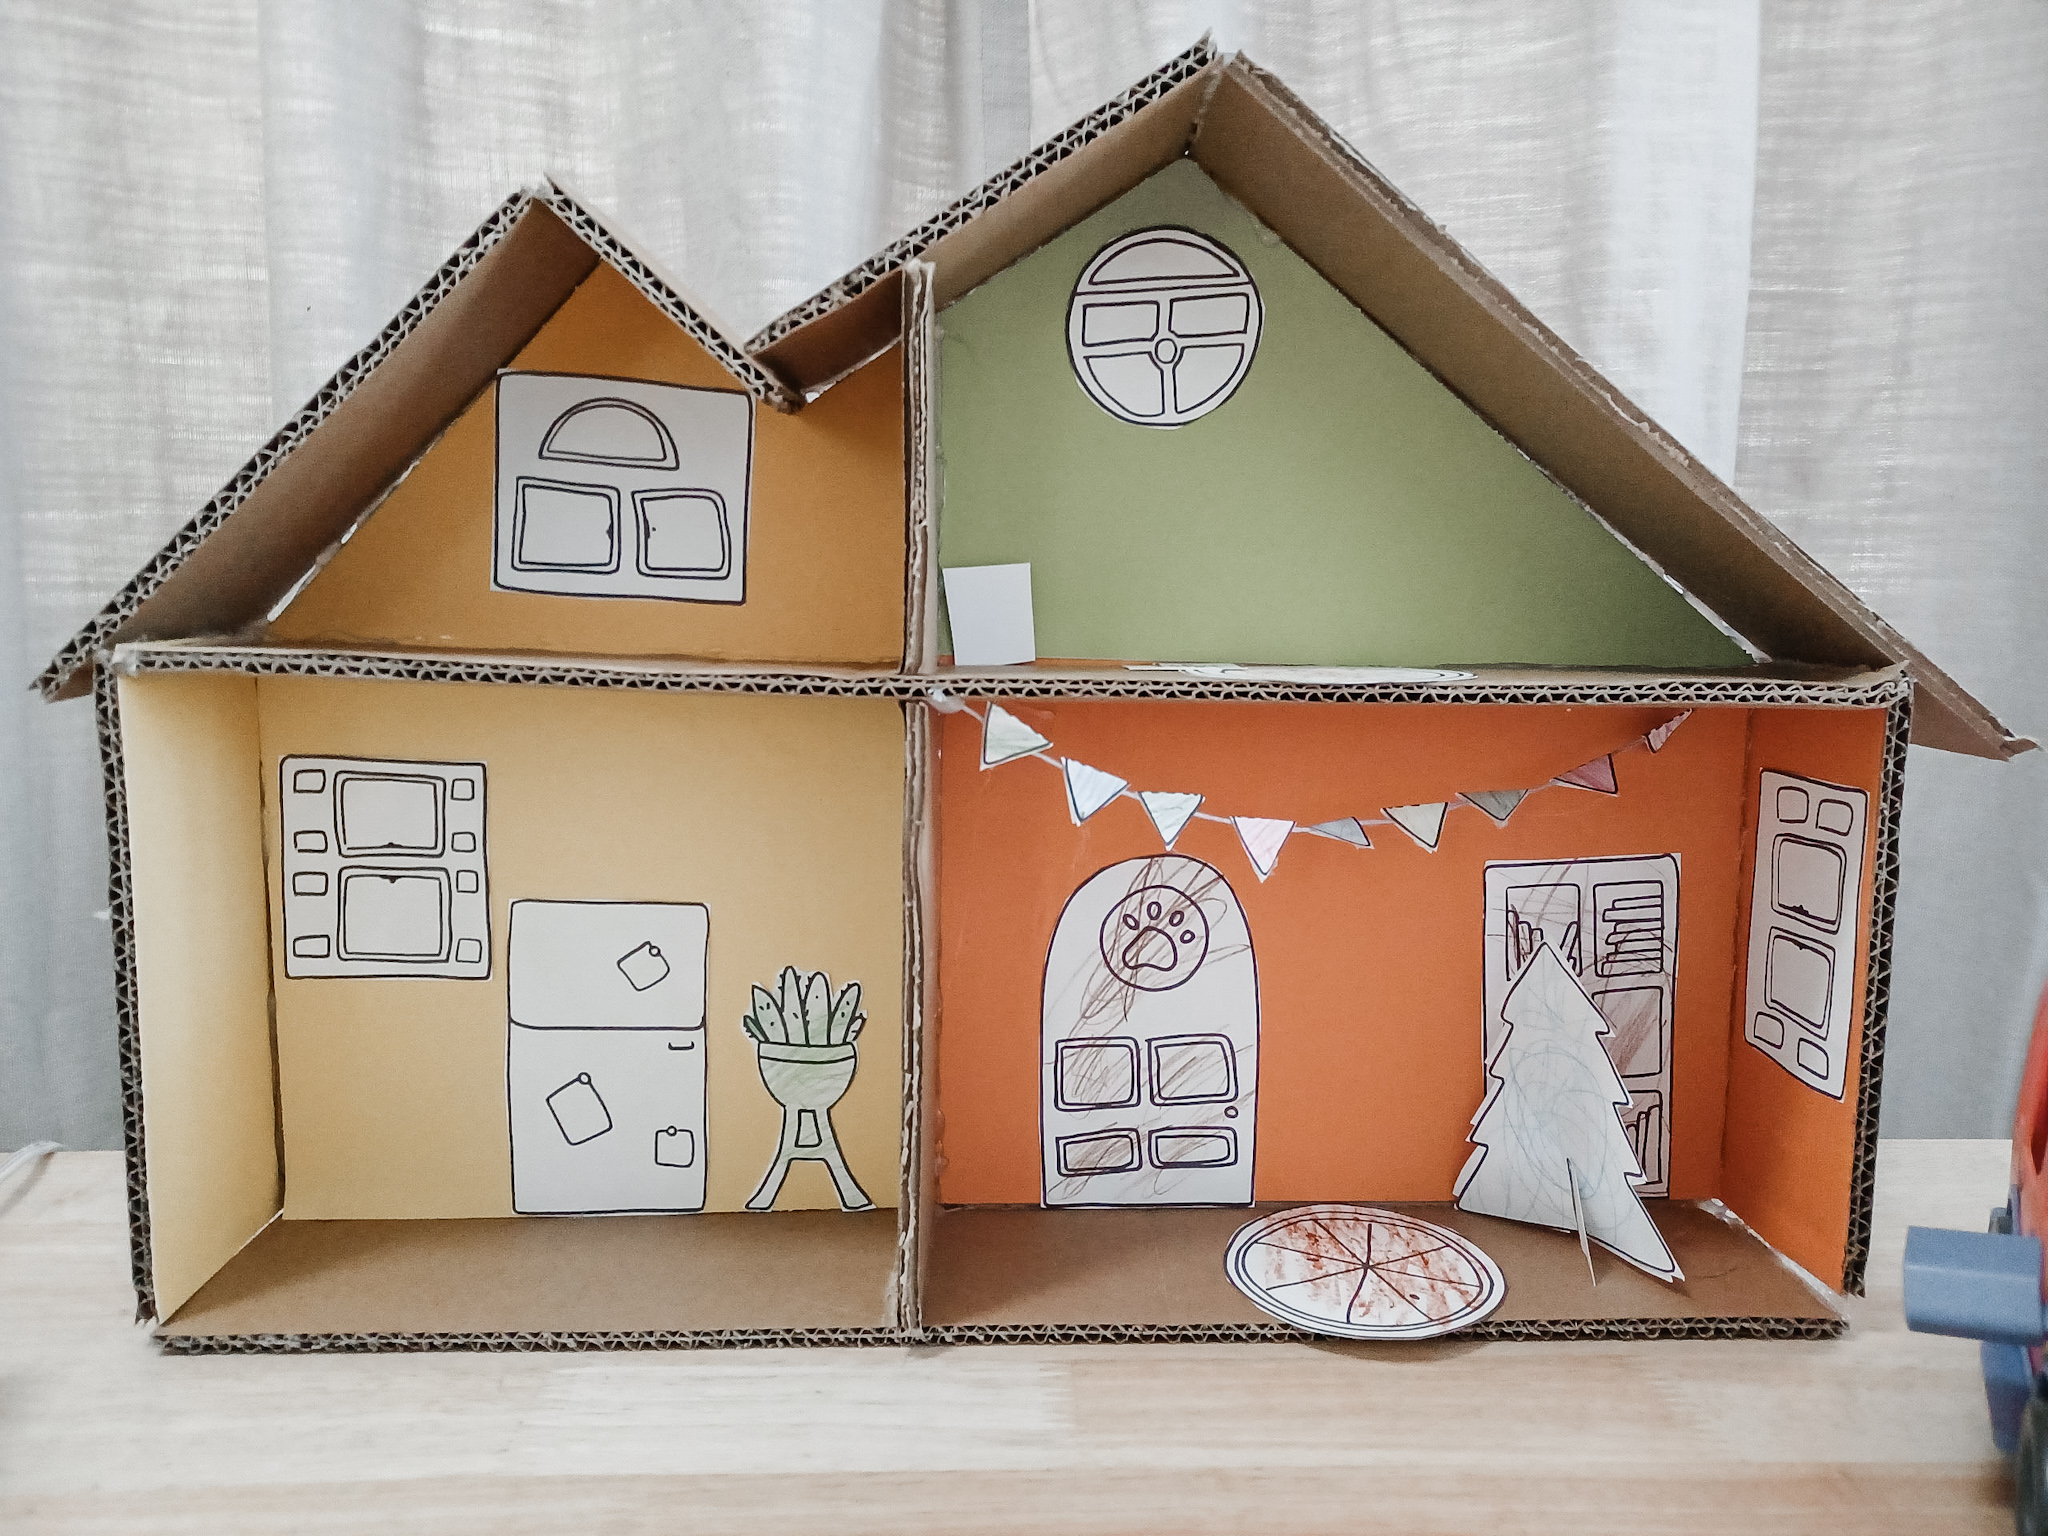 DIY Cardboard Bluey House